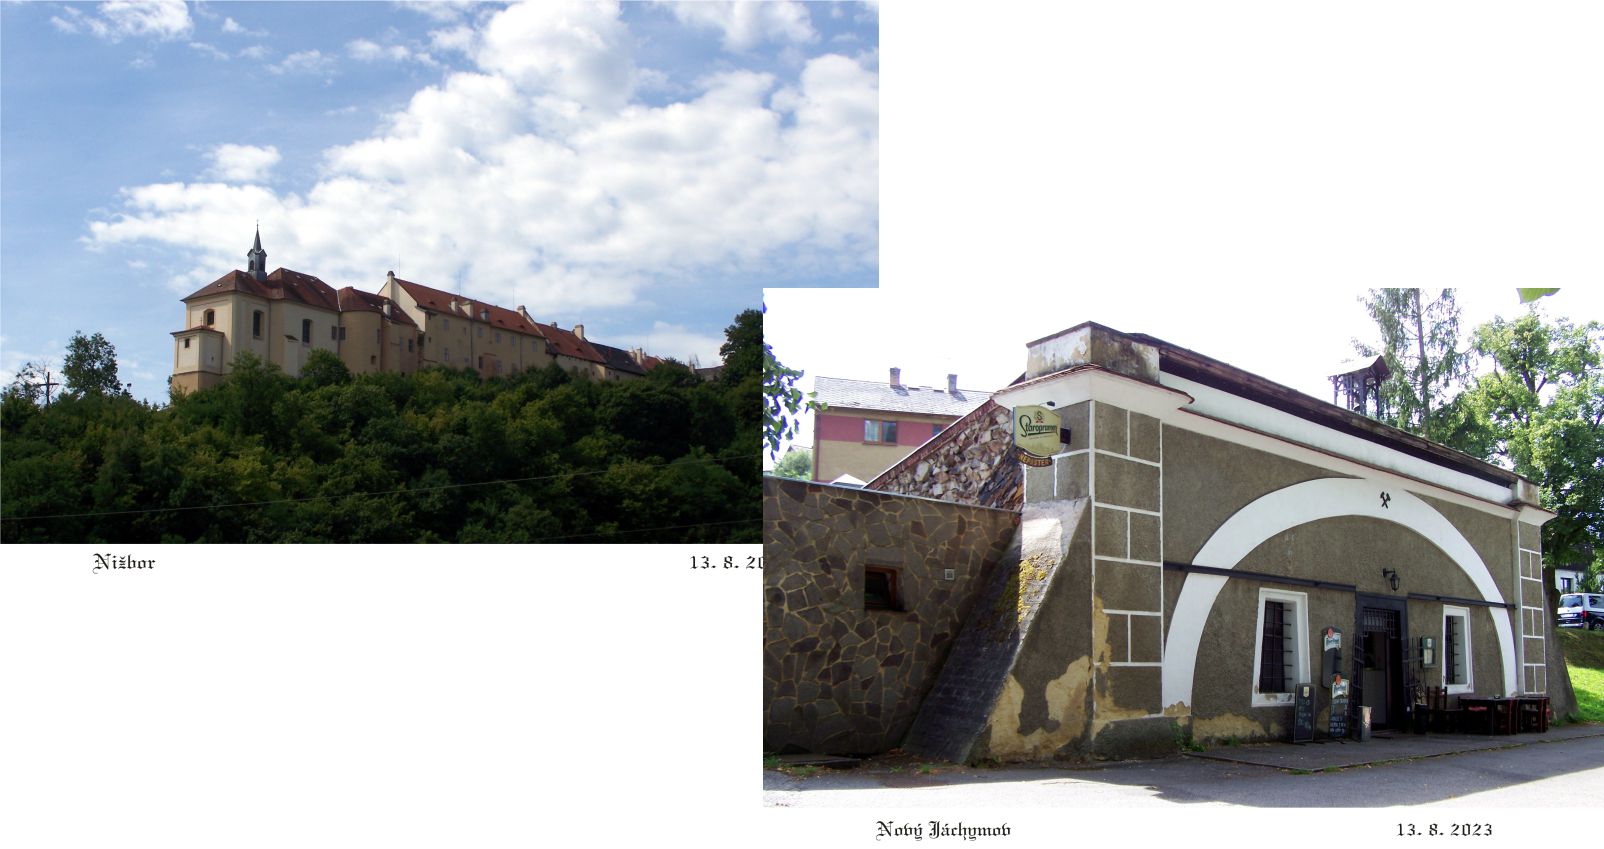 Nižborský hrad a zajímavá cechovna v Novém Jáchymově.